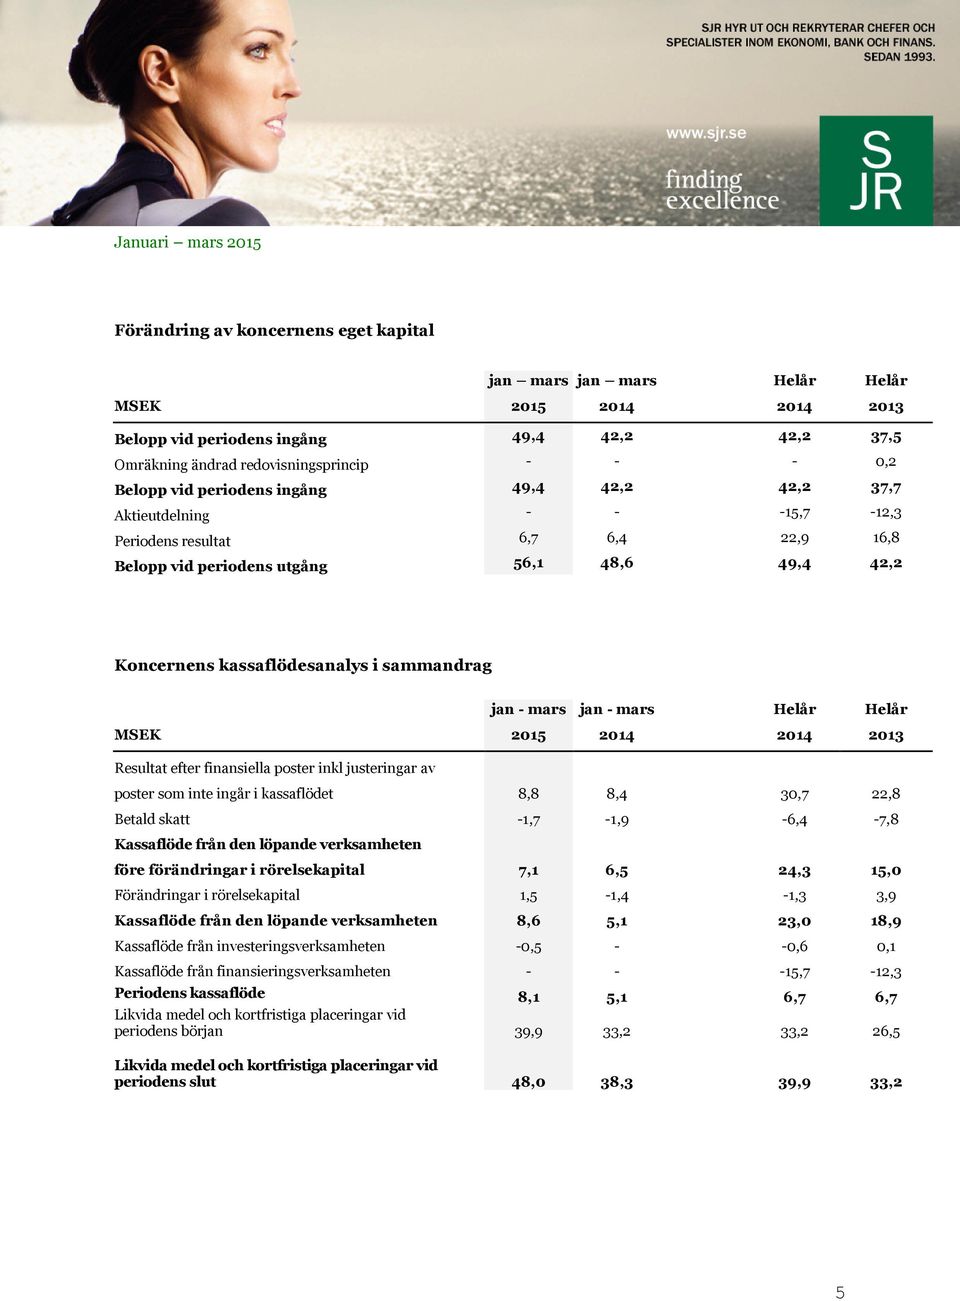 mars jan - mars Helår Helår MSEK 2015 2014 2014 2013 Resultat efter finansiella poster inkl justeringar av poster som inte ingår i kassaflödet 8,8 8,4 30,7 22,8 Betald skatt -1,7-1,9-6,4-7,8